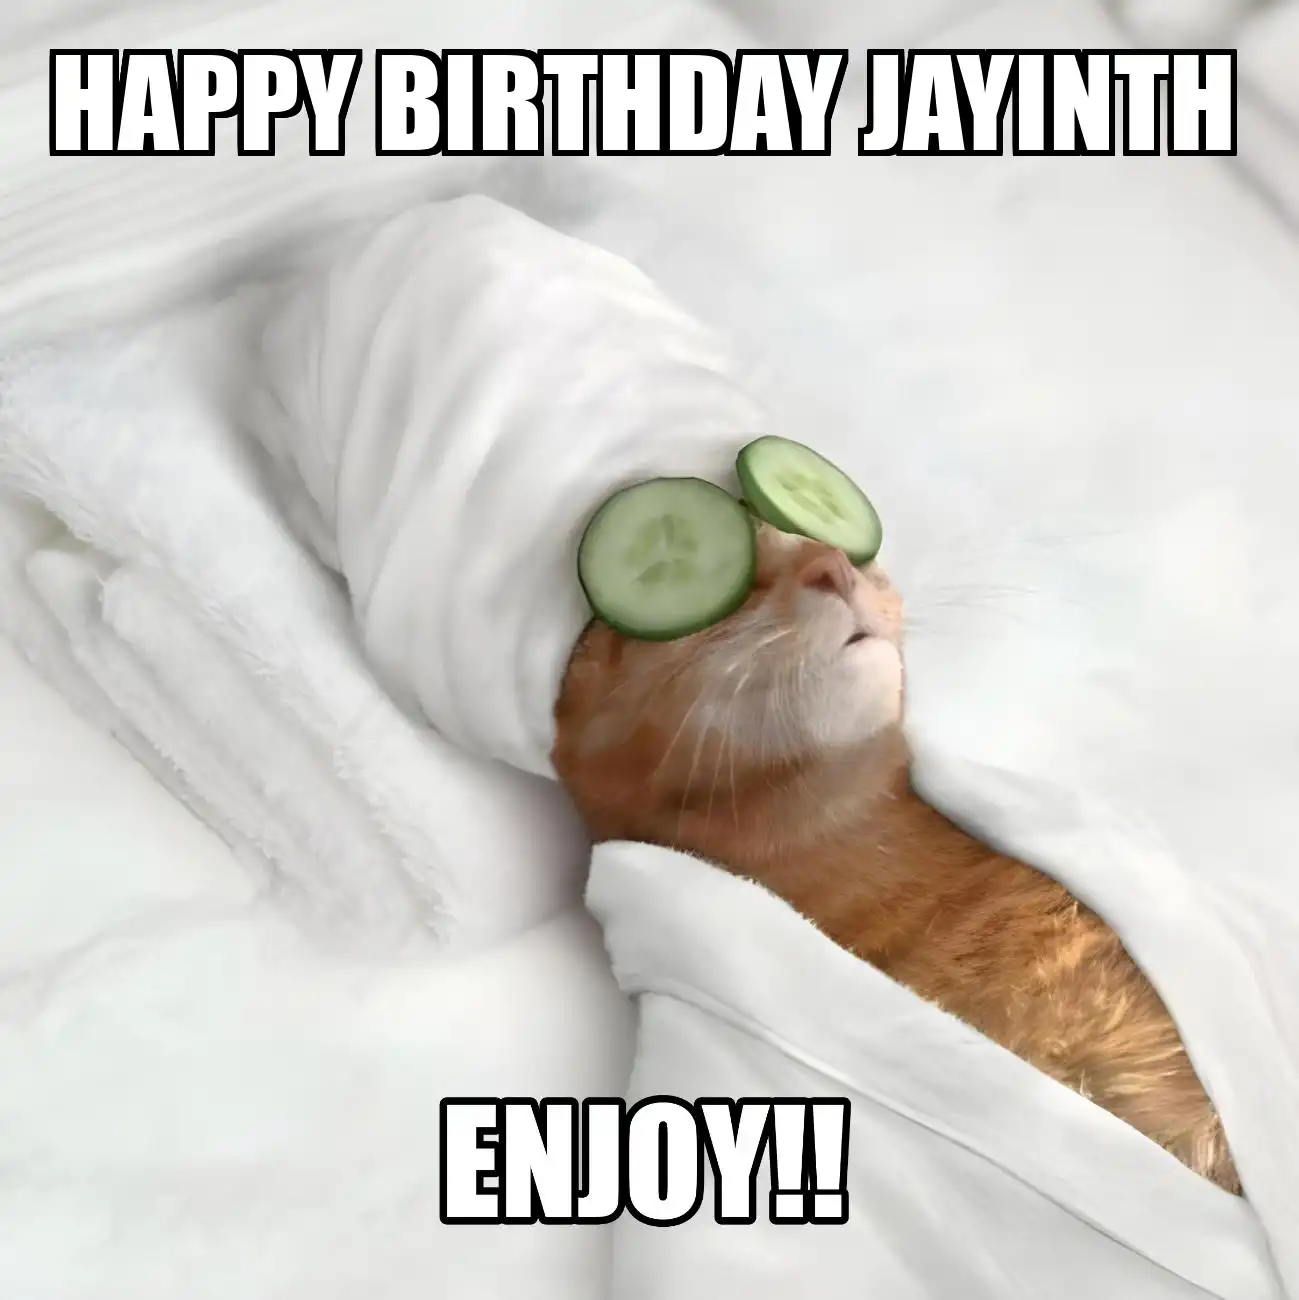 Happy Birthday Jayinth Enjoy Cat Meme